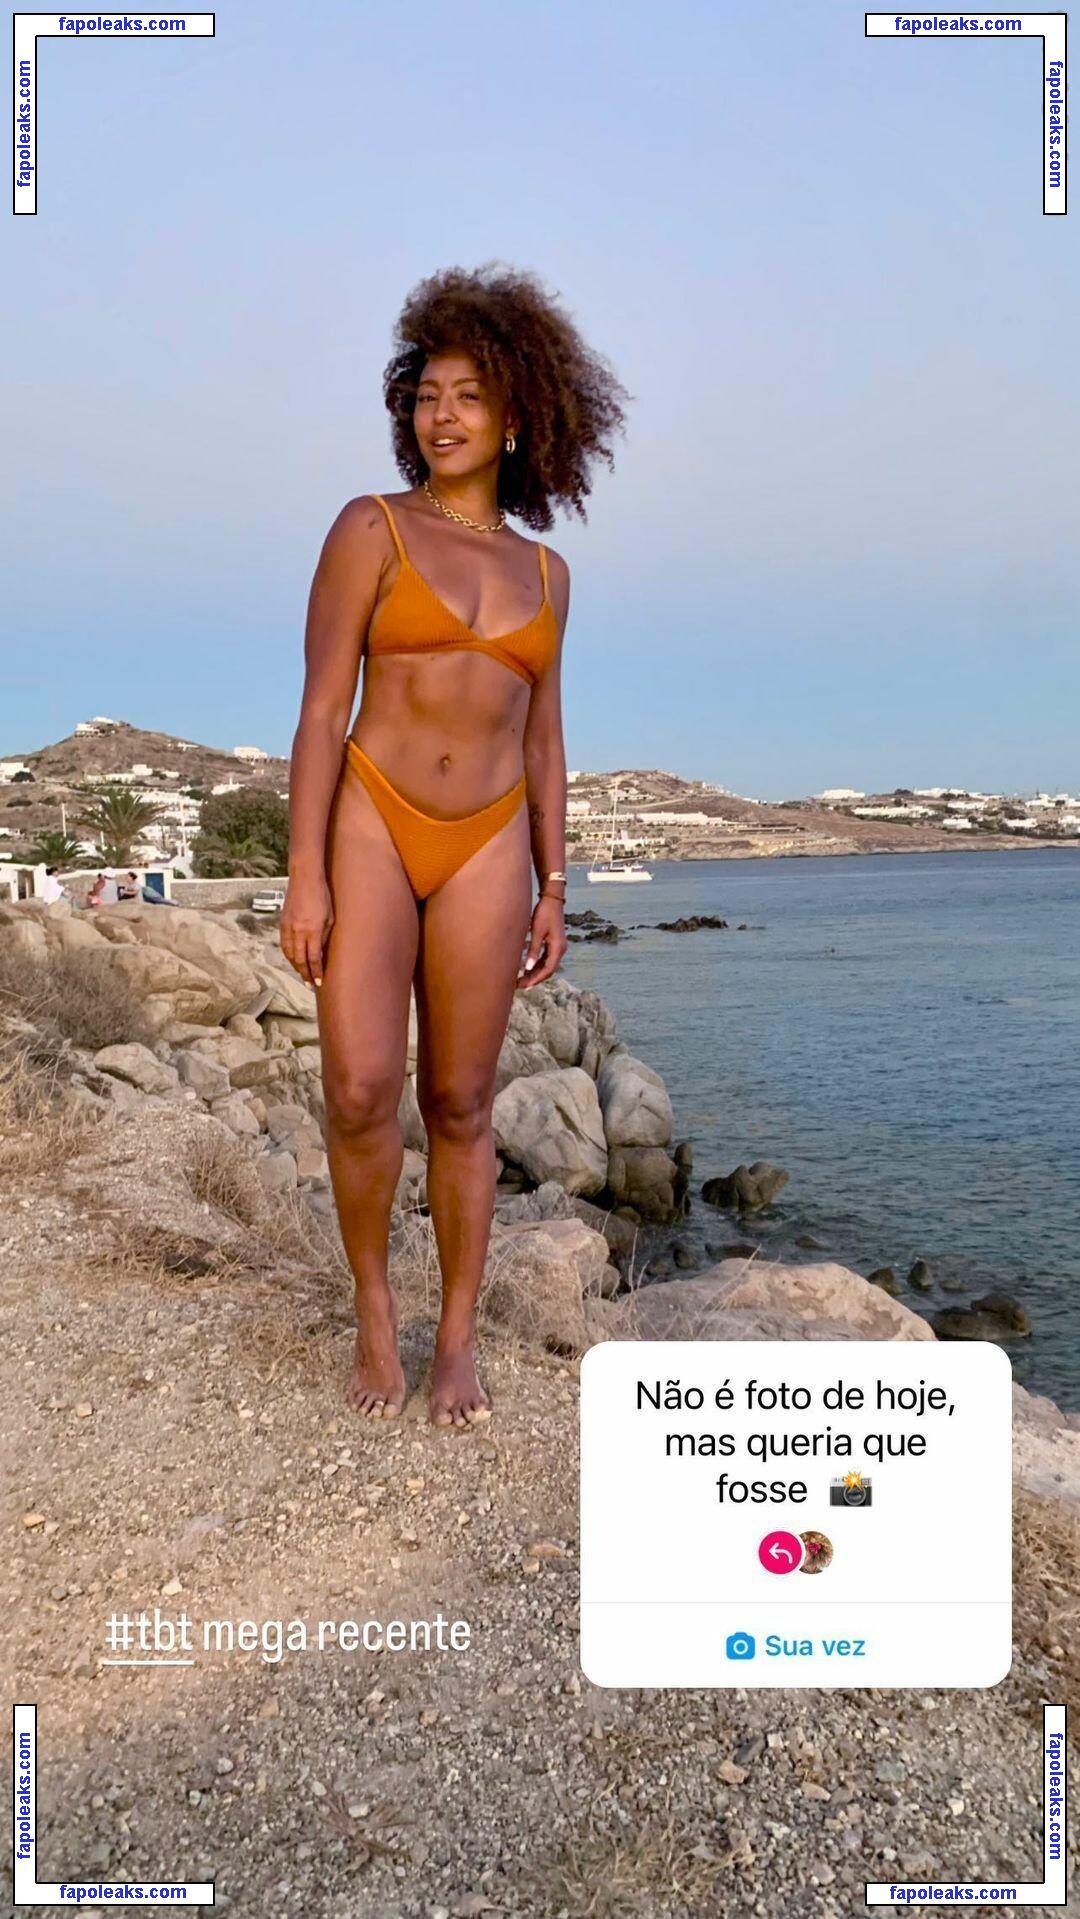 Sheron Menezes / sheronmenezzes nude photo #0004 from OnlyFans